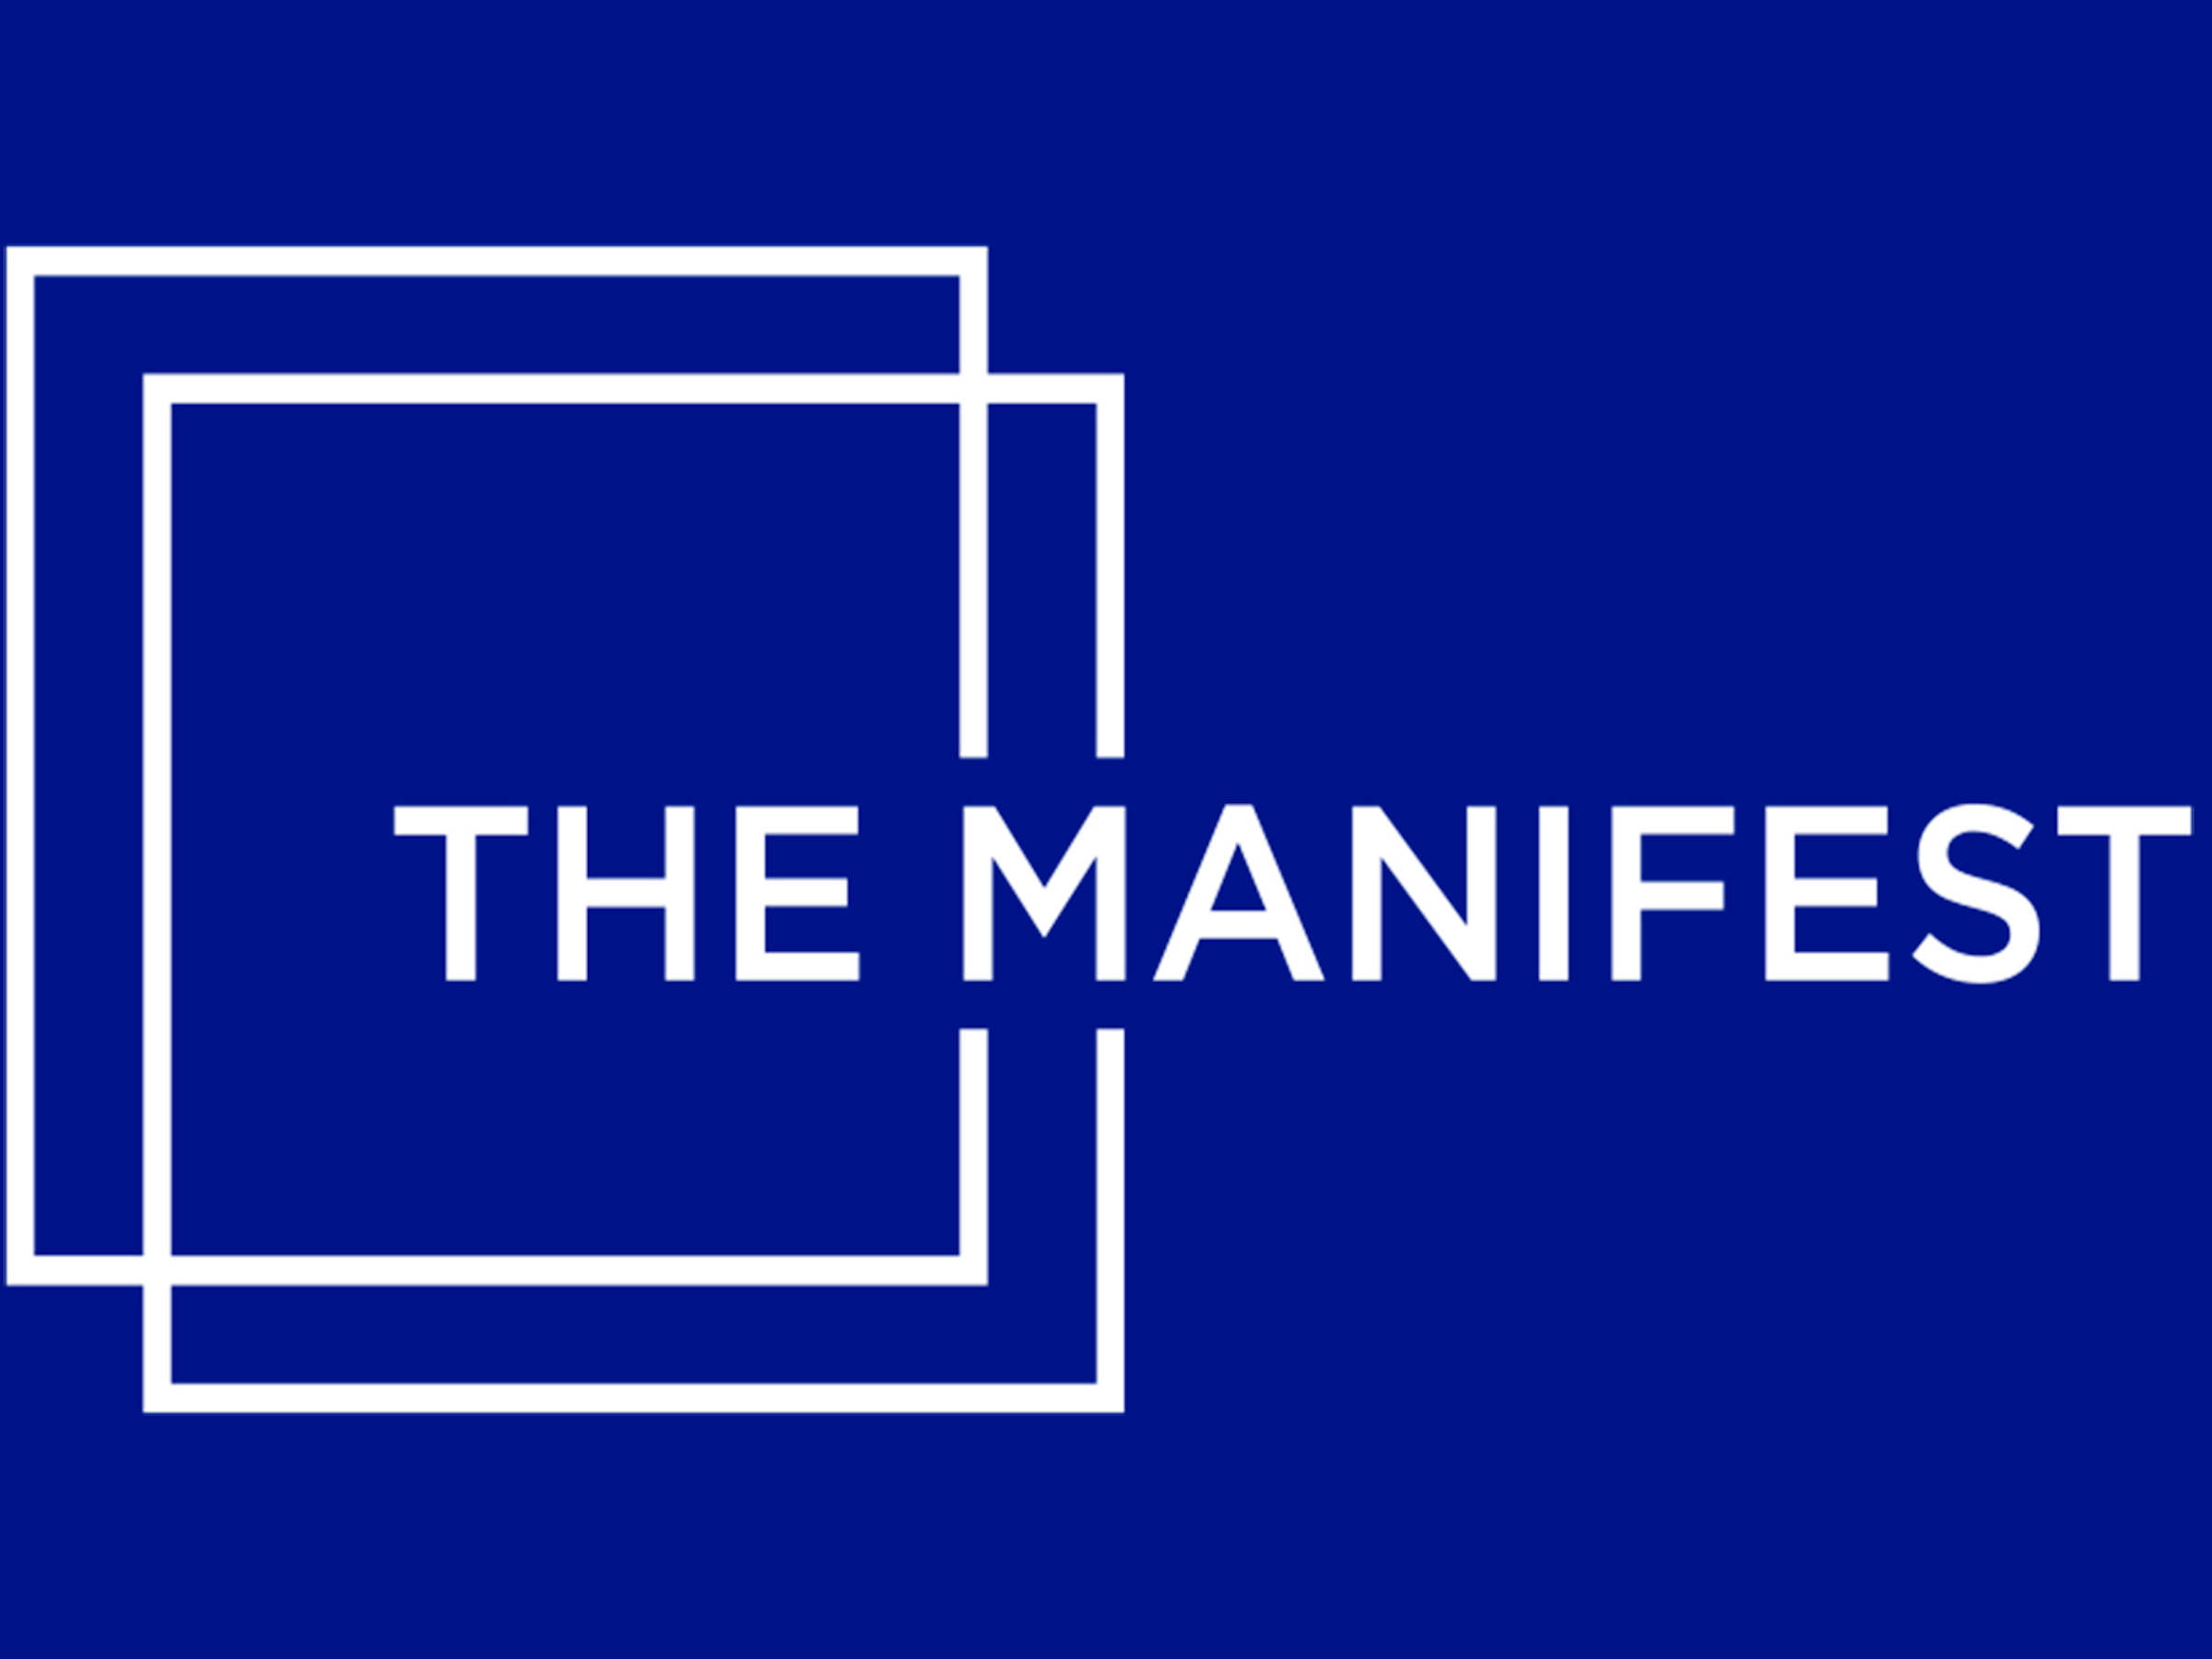 Manifest logo image